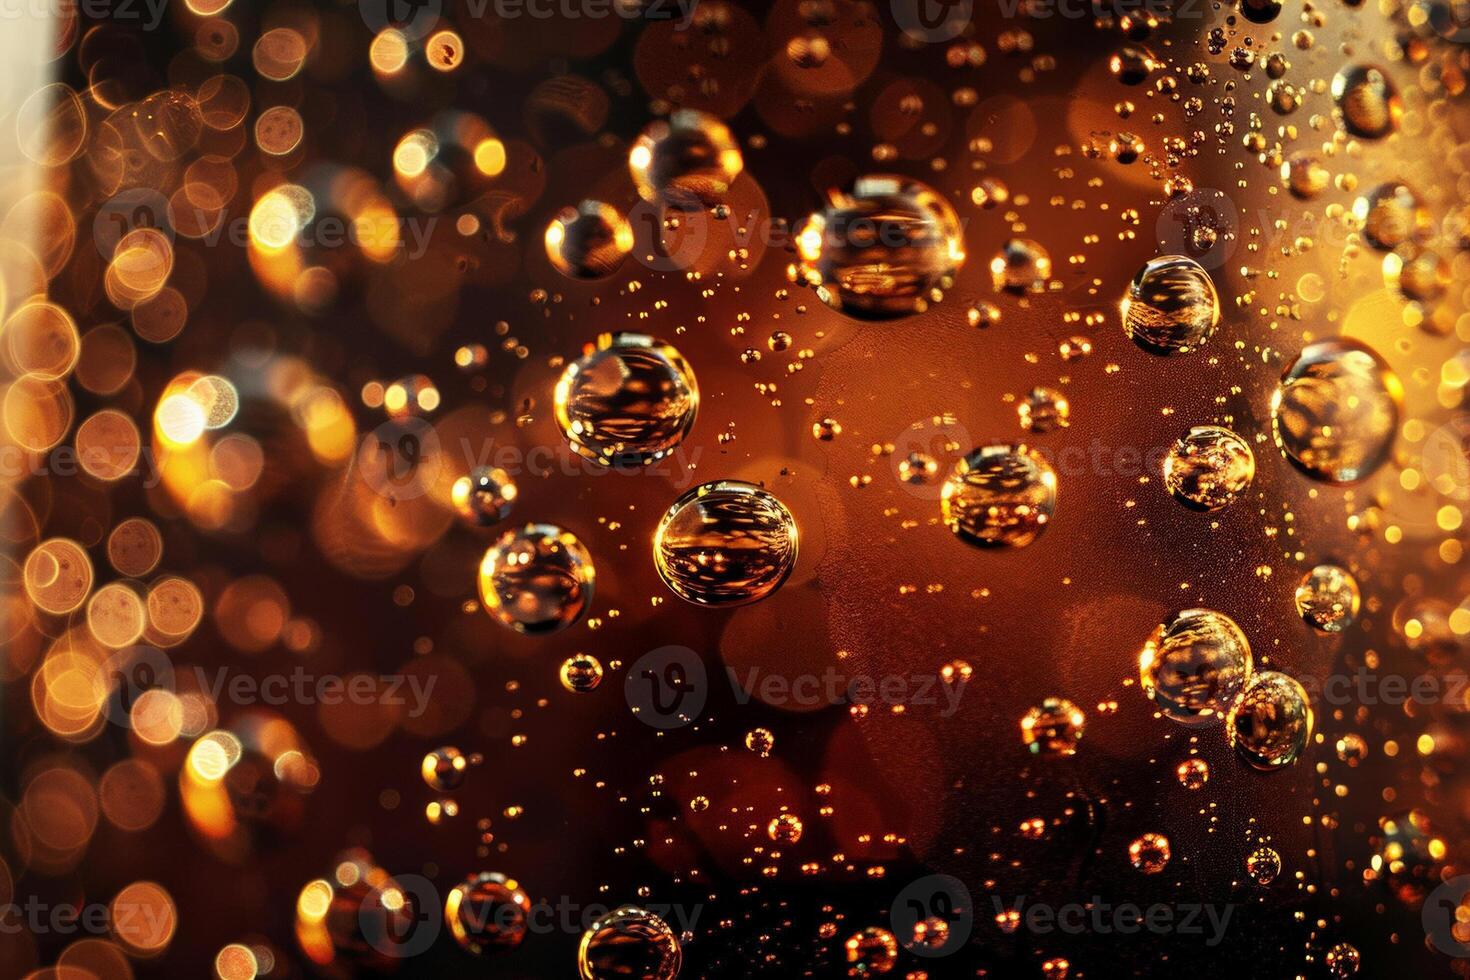 abstrakt representation av öl bubblor, makro fotografi, subtil gradienter från ljus till mörk foto